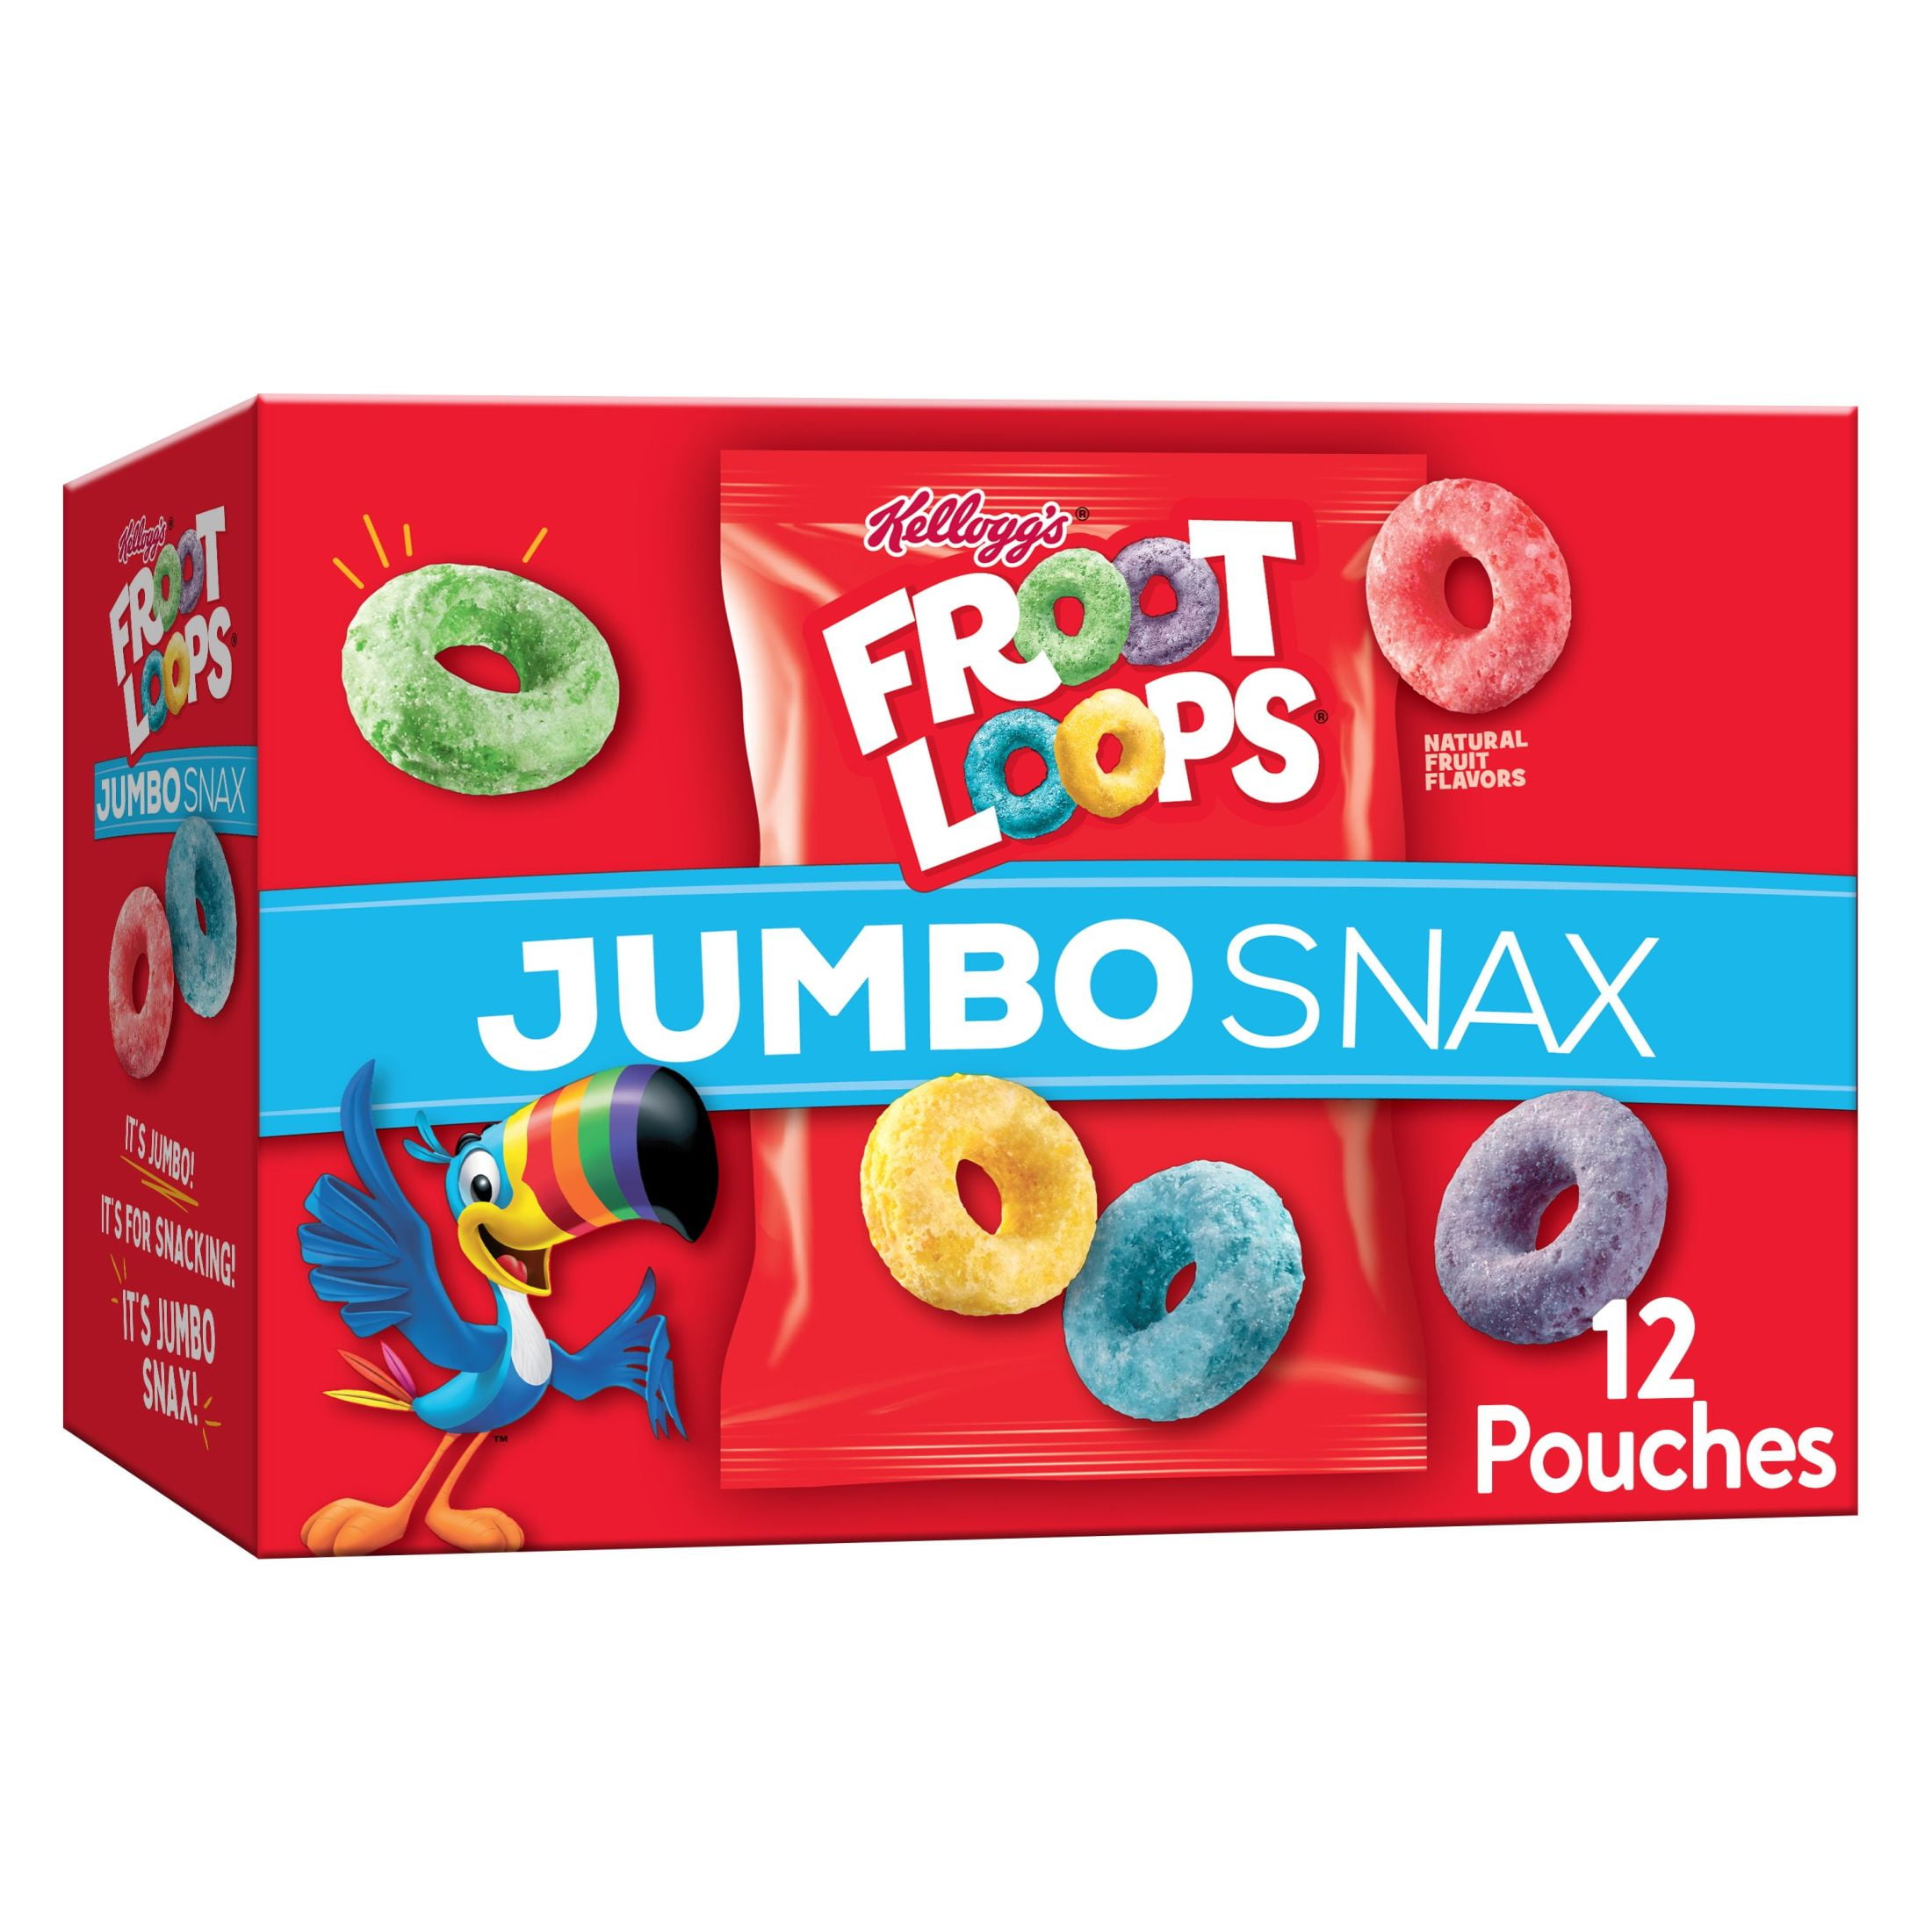 Kellogg's Froot Loops Jumbo Snax Original Cereal Snacks, 5.4 oz, 12 Count